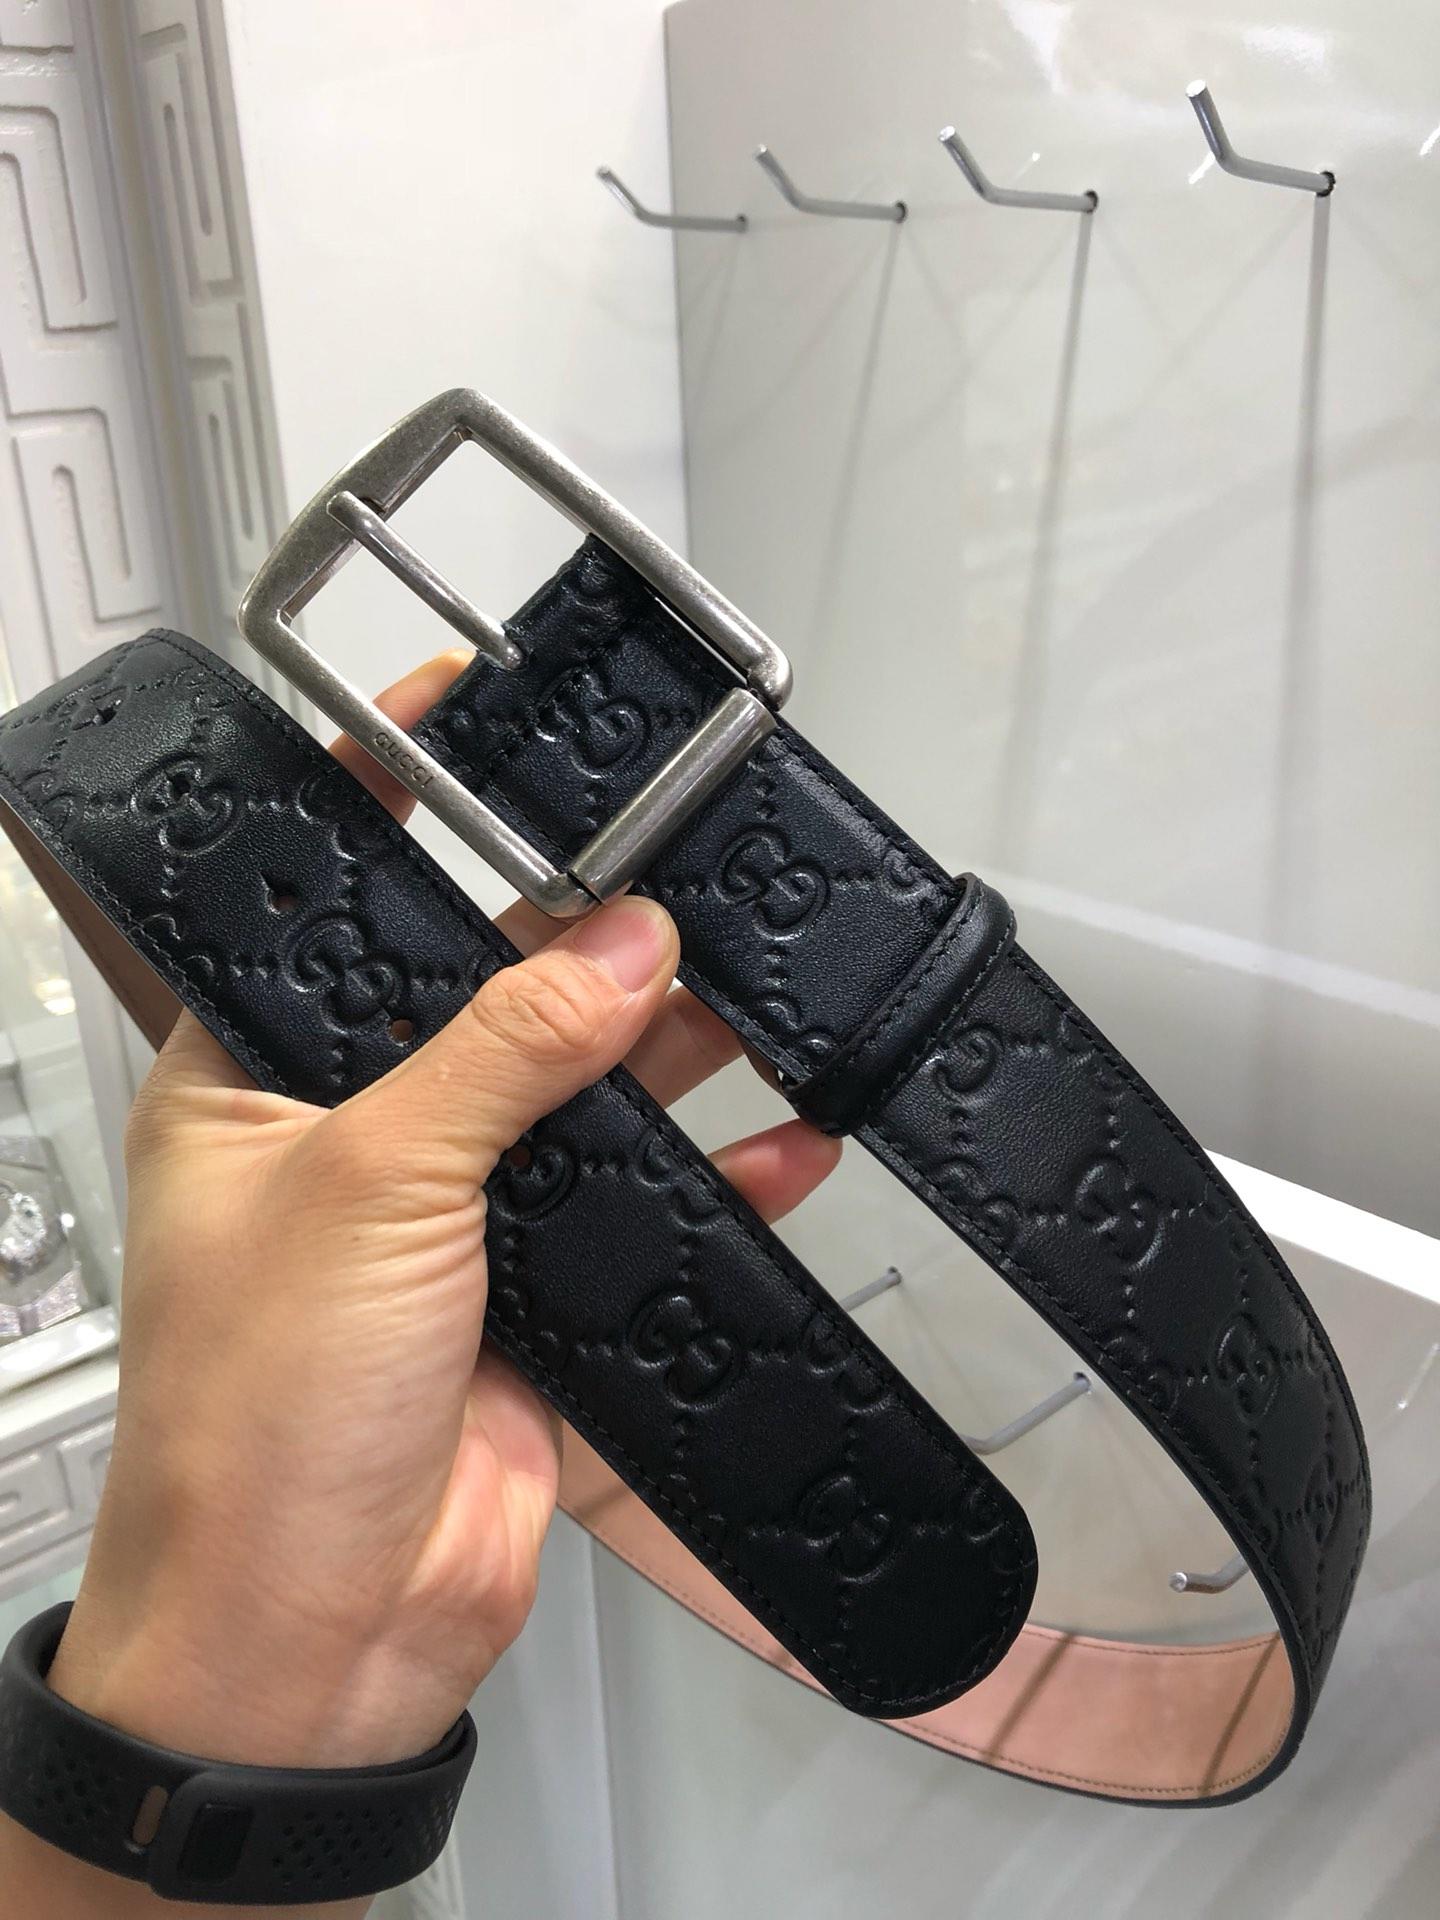 Silver G-less Gucci buckle belt ASS02432